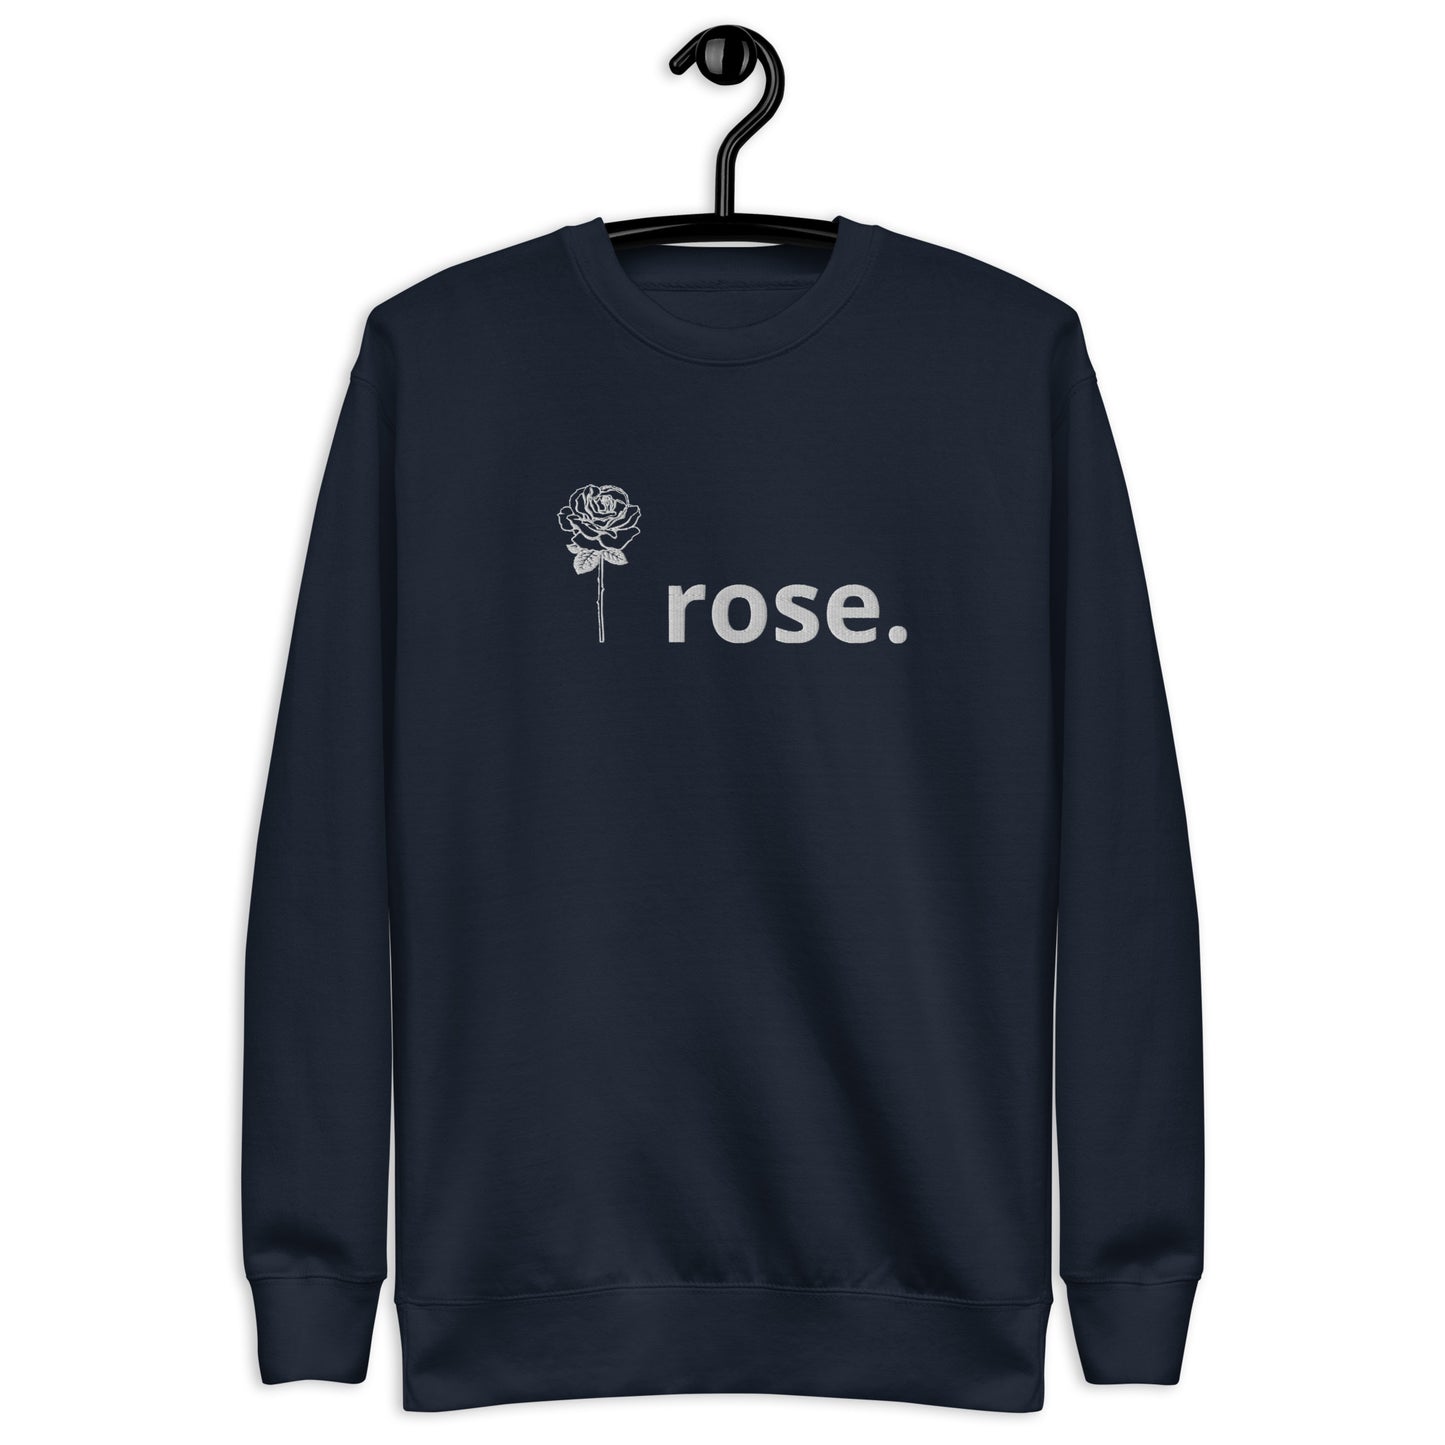 I Rose. Unisex Sweatshirt